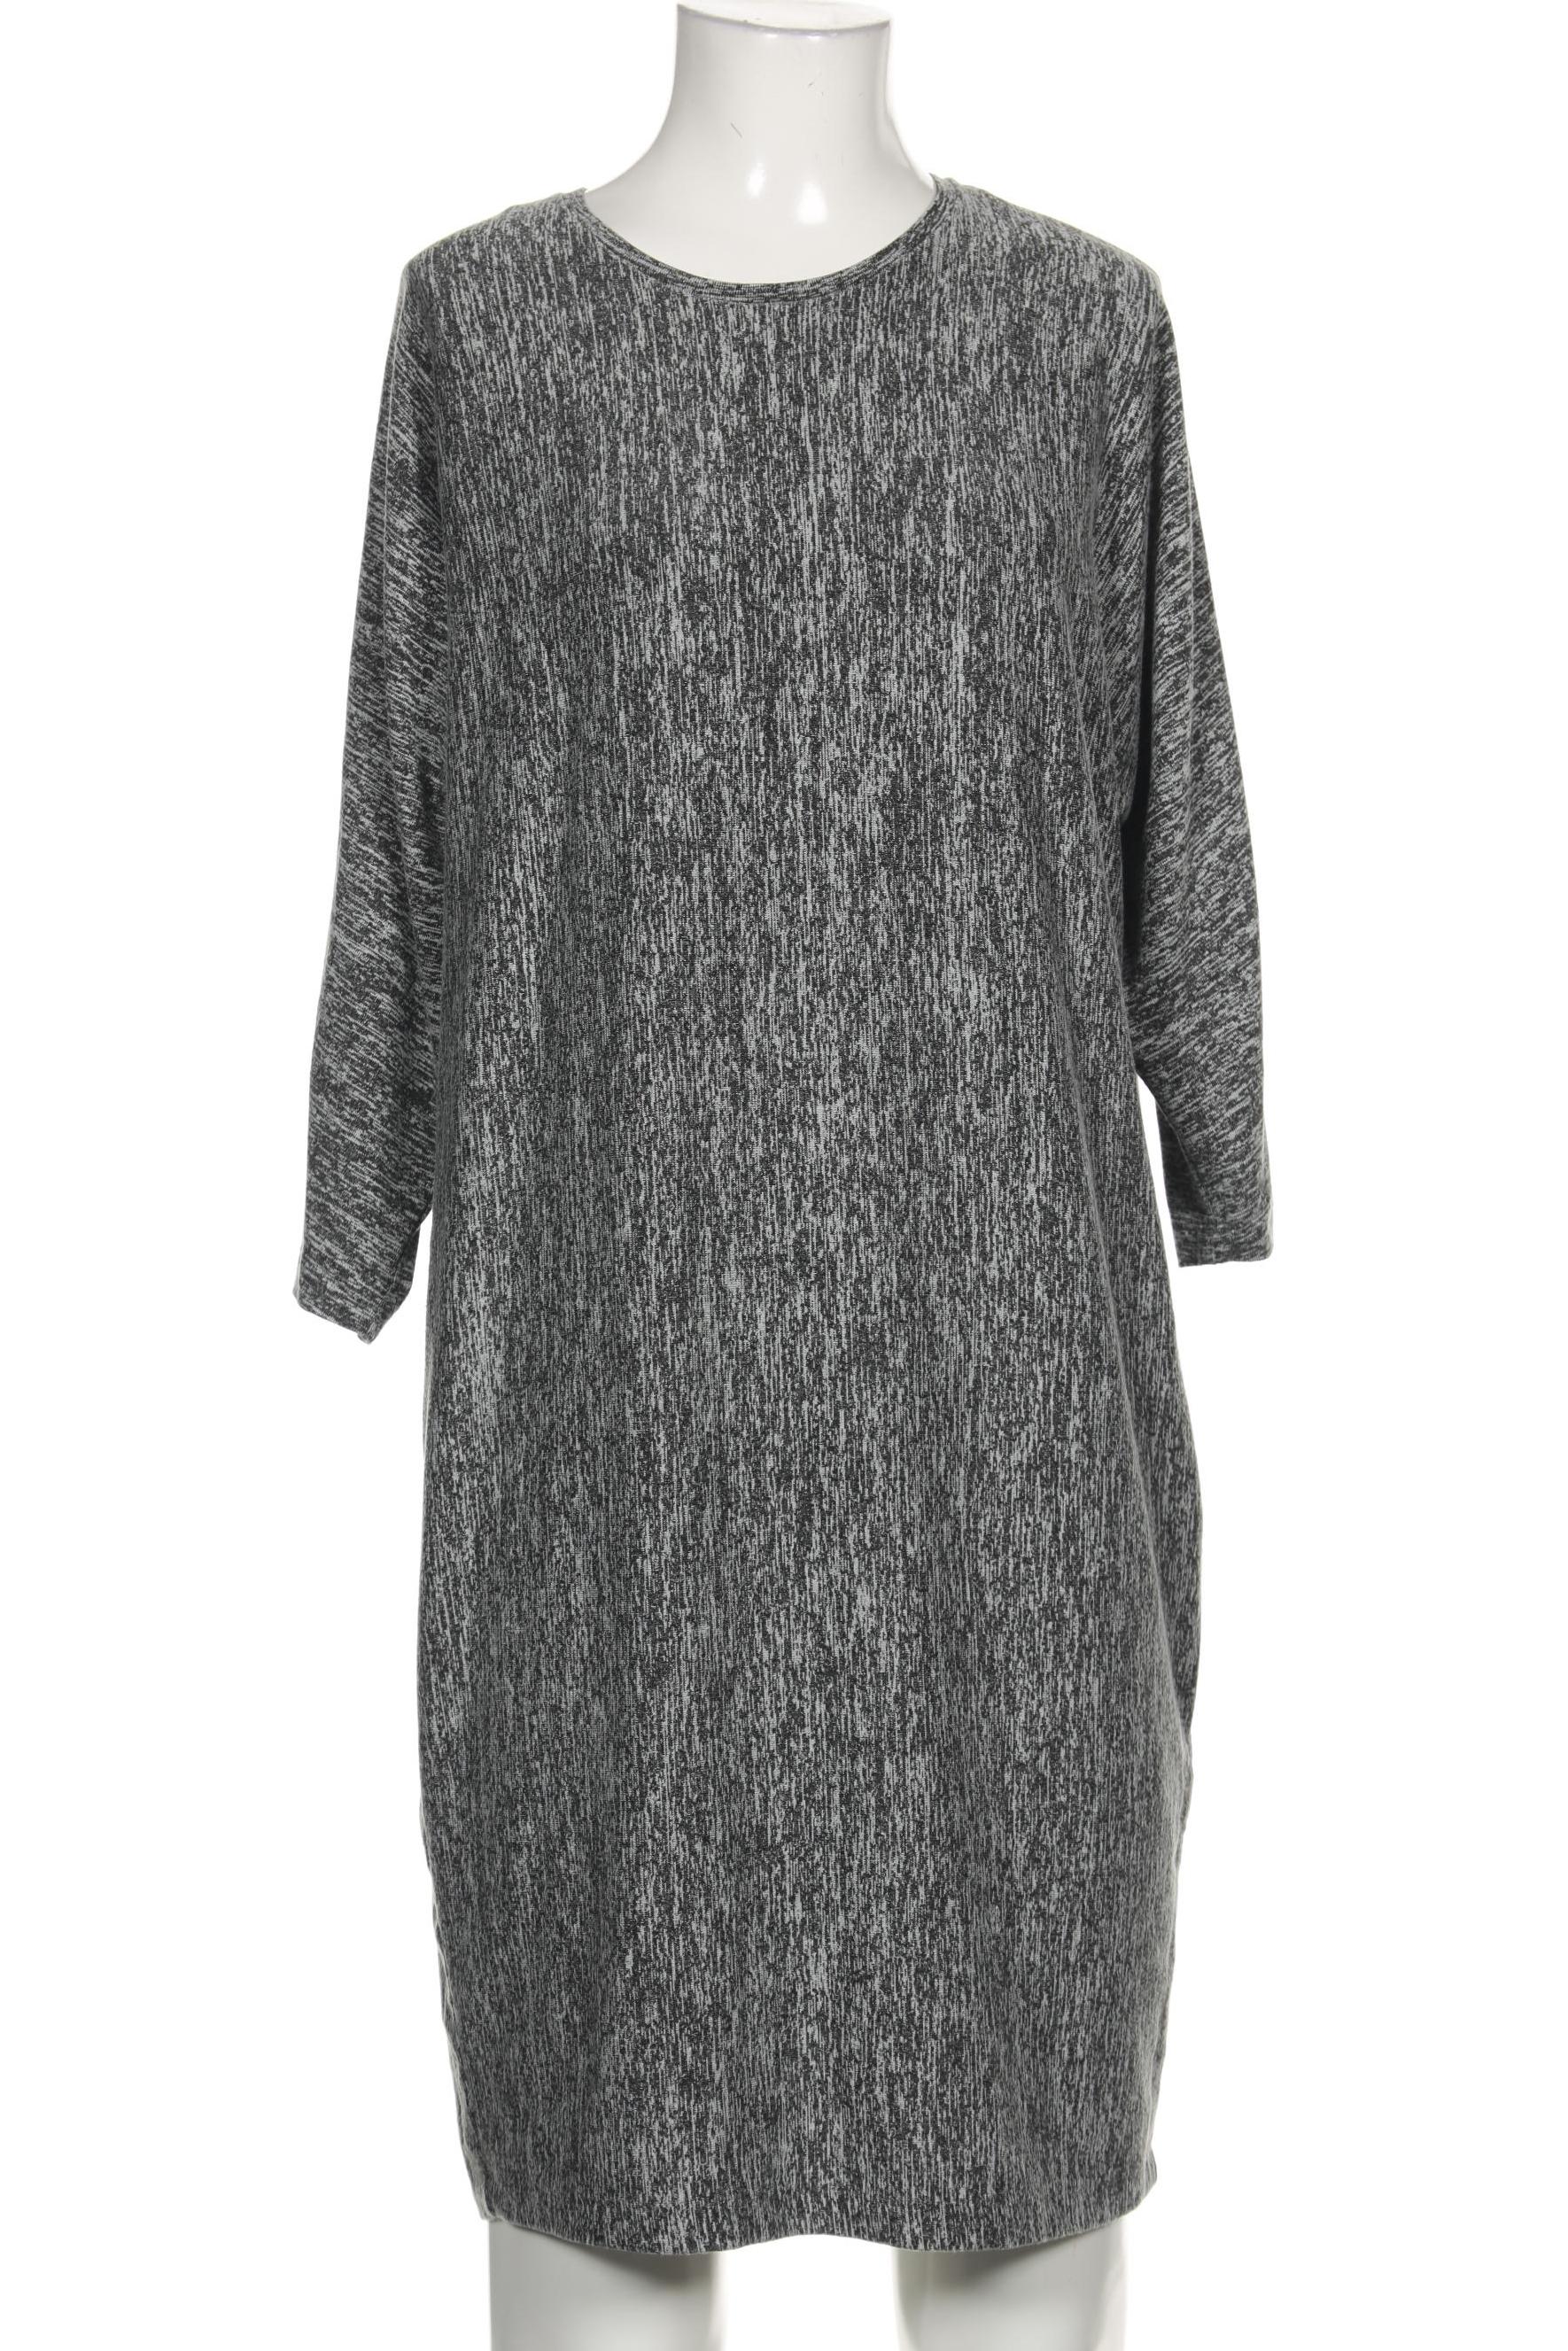 COS Damen Kleid, grau, Gr. 36 von COS